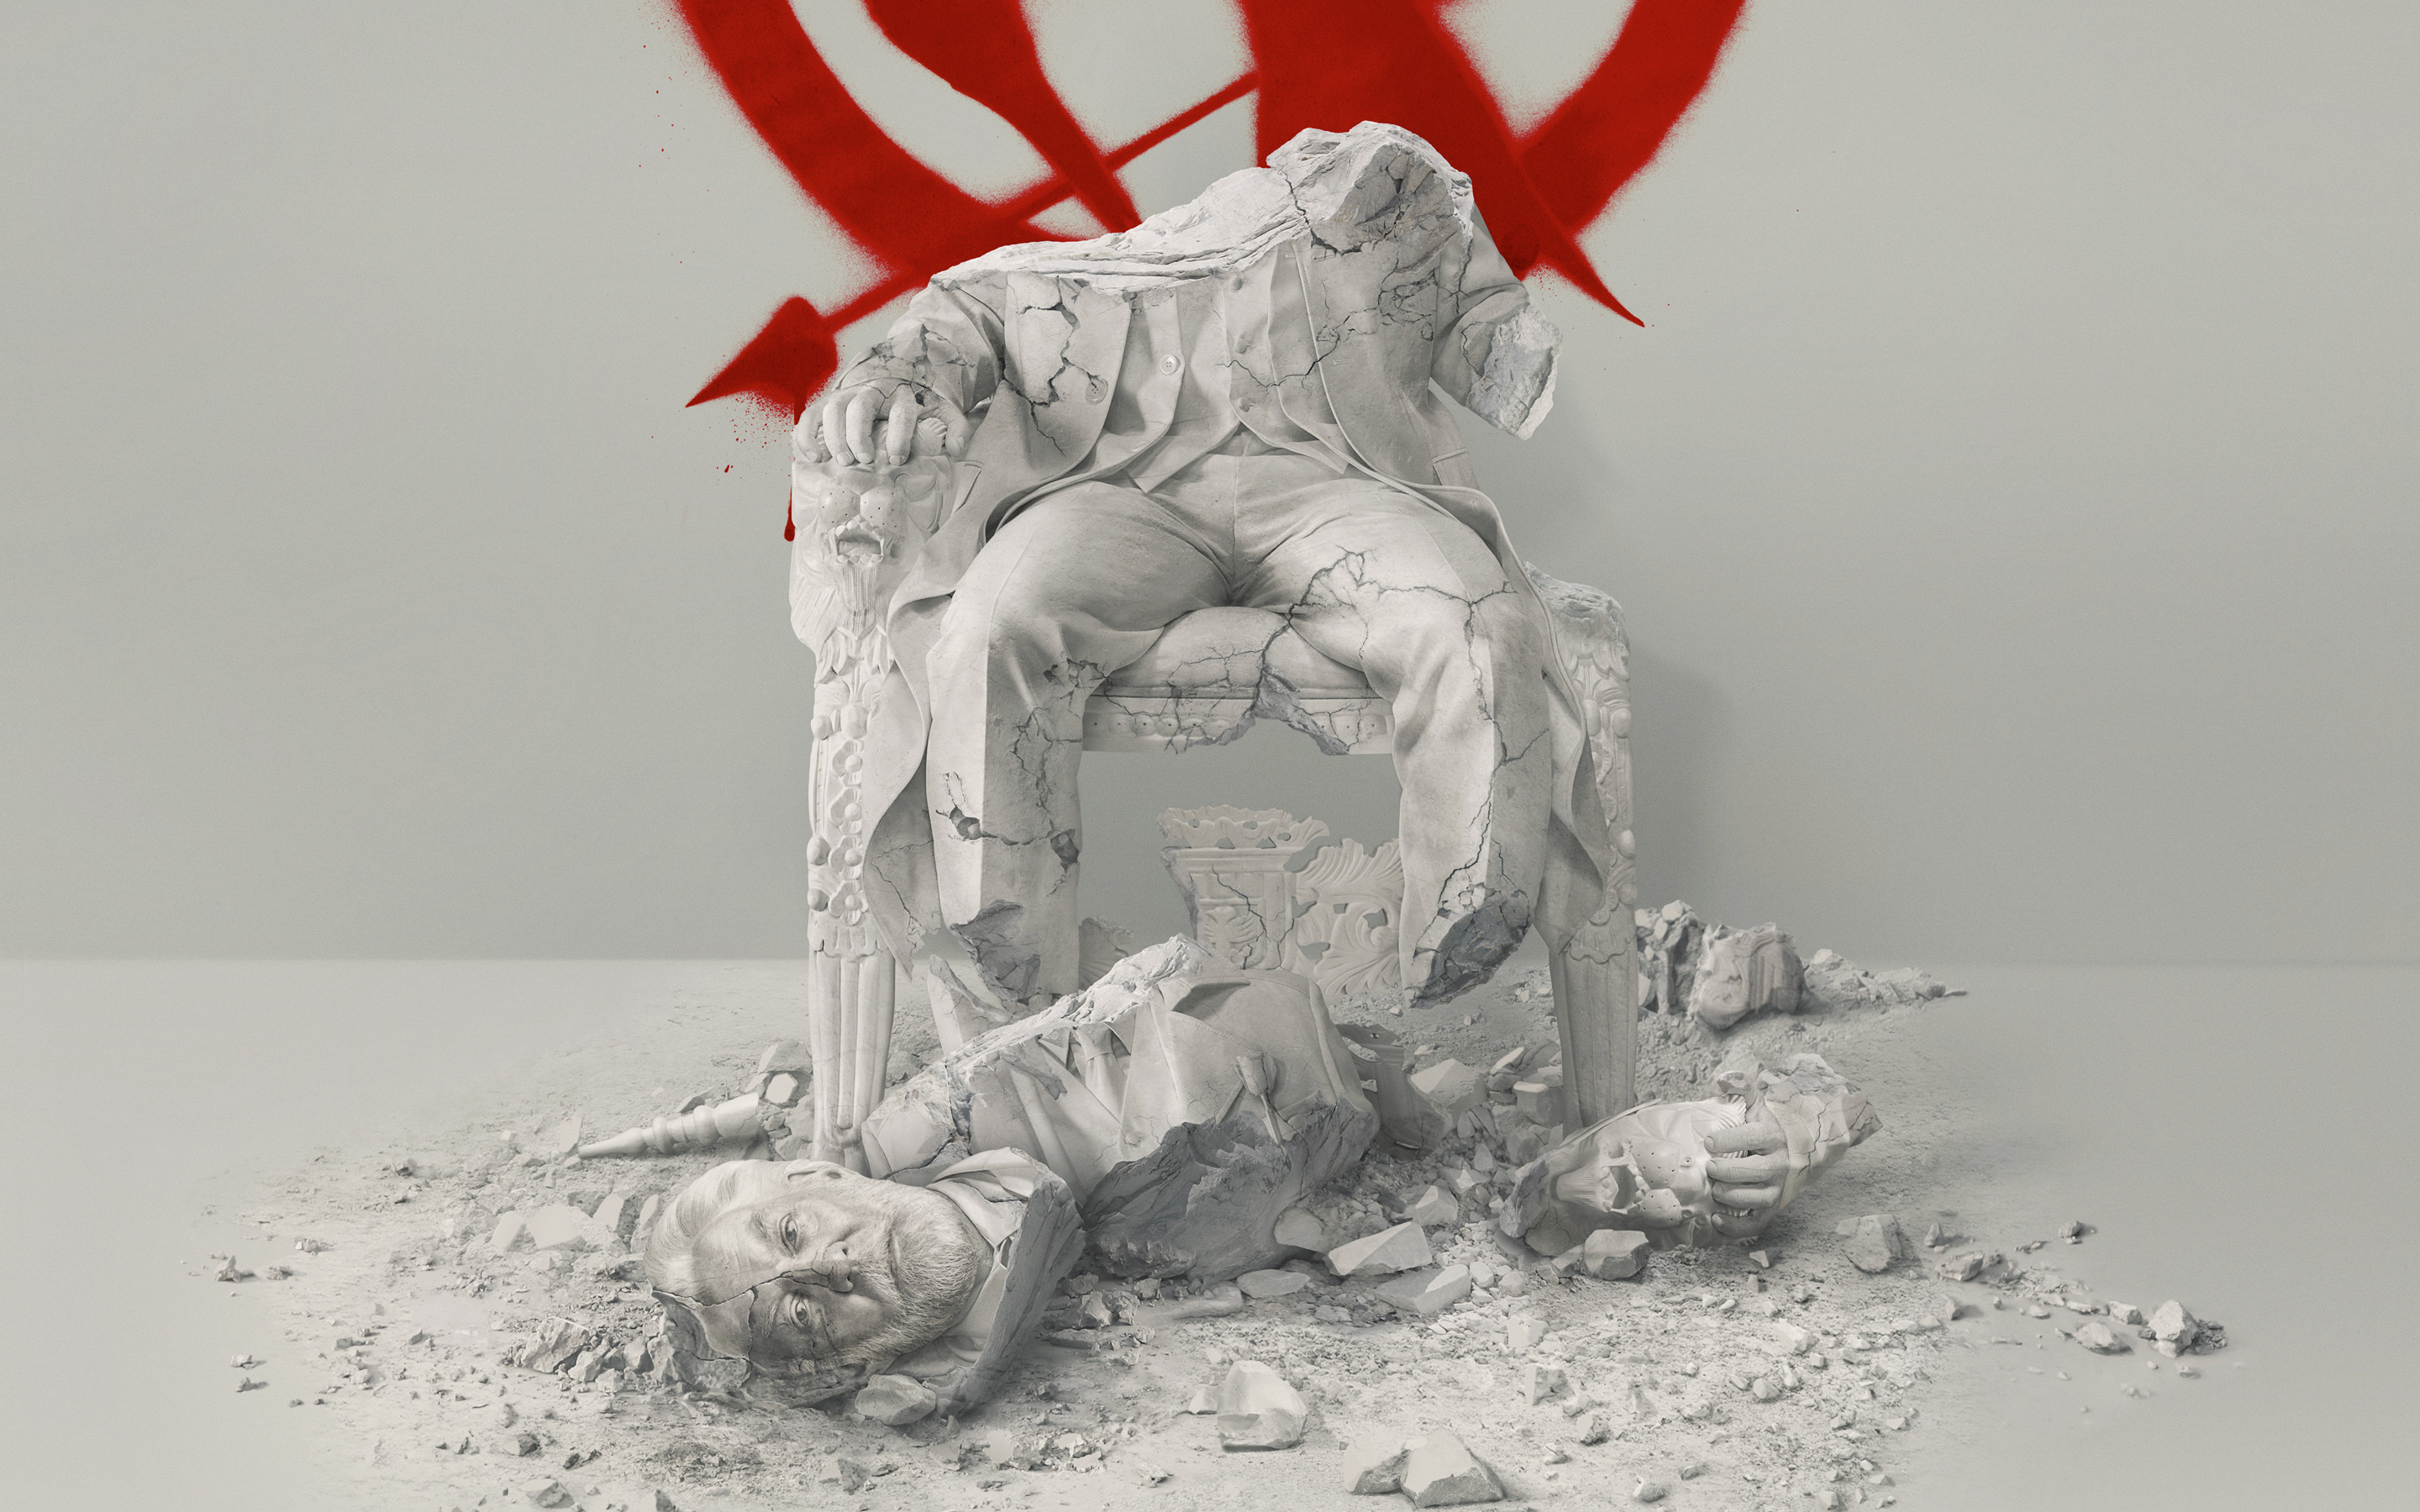 2880x1800 The Hunger Games: Mockingjay - Part 2 Widescreen Wallpaper